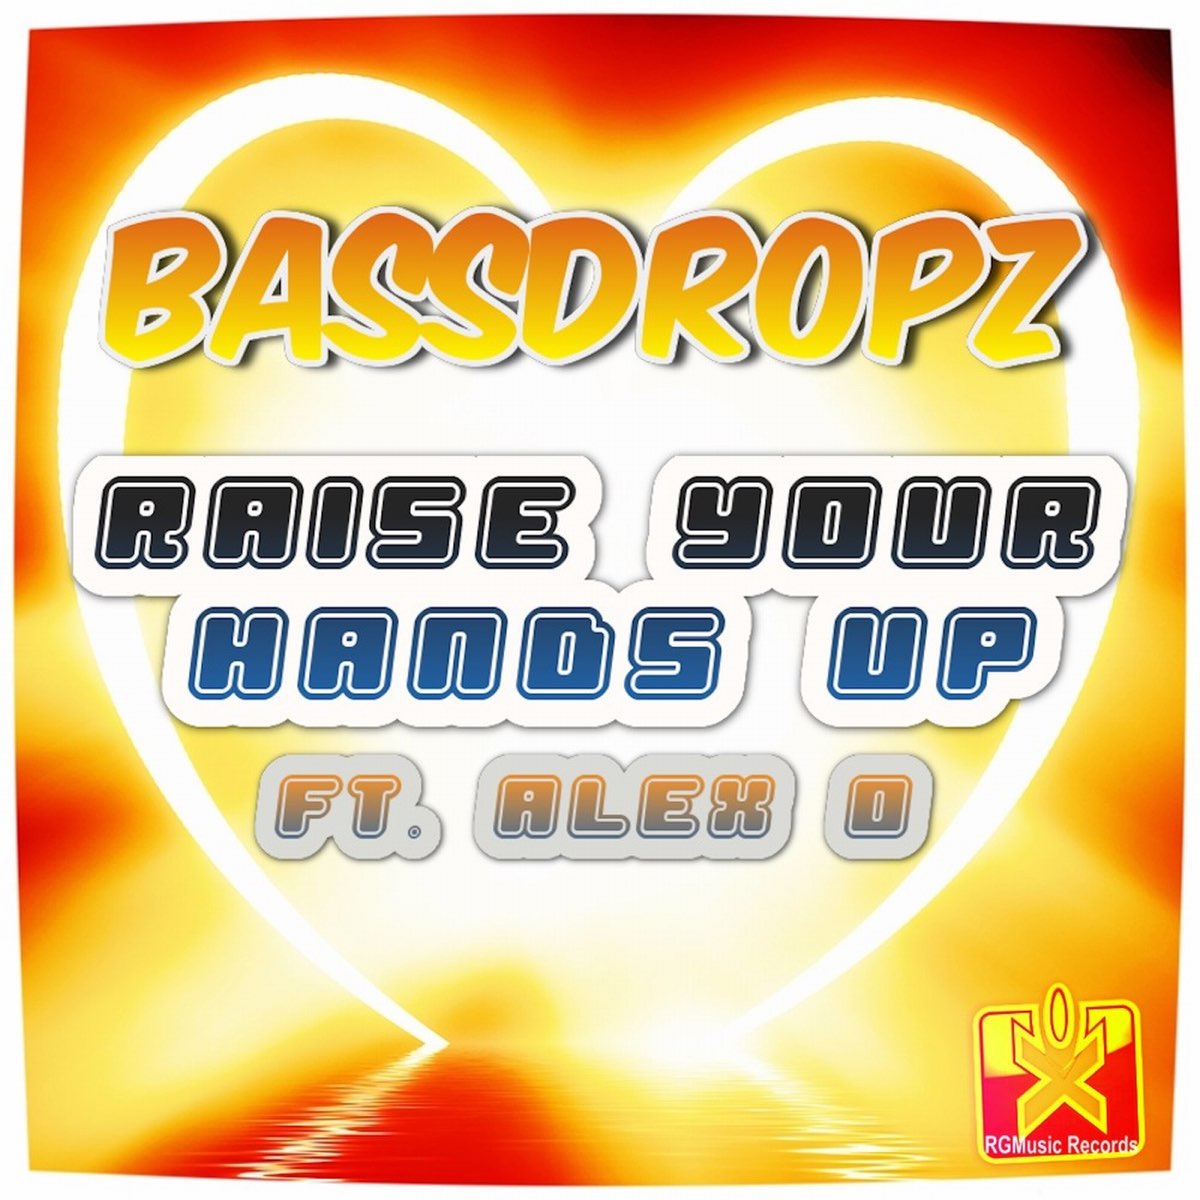 Raise Your Hands Up (feat. Alex O') - Single par Bassdropz sur Apple Music